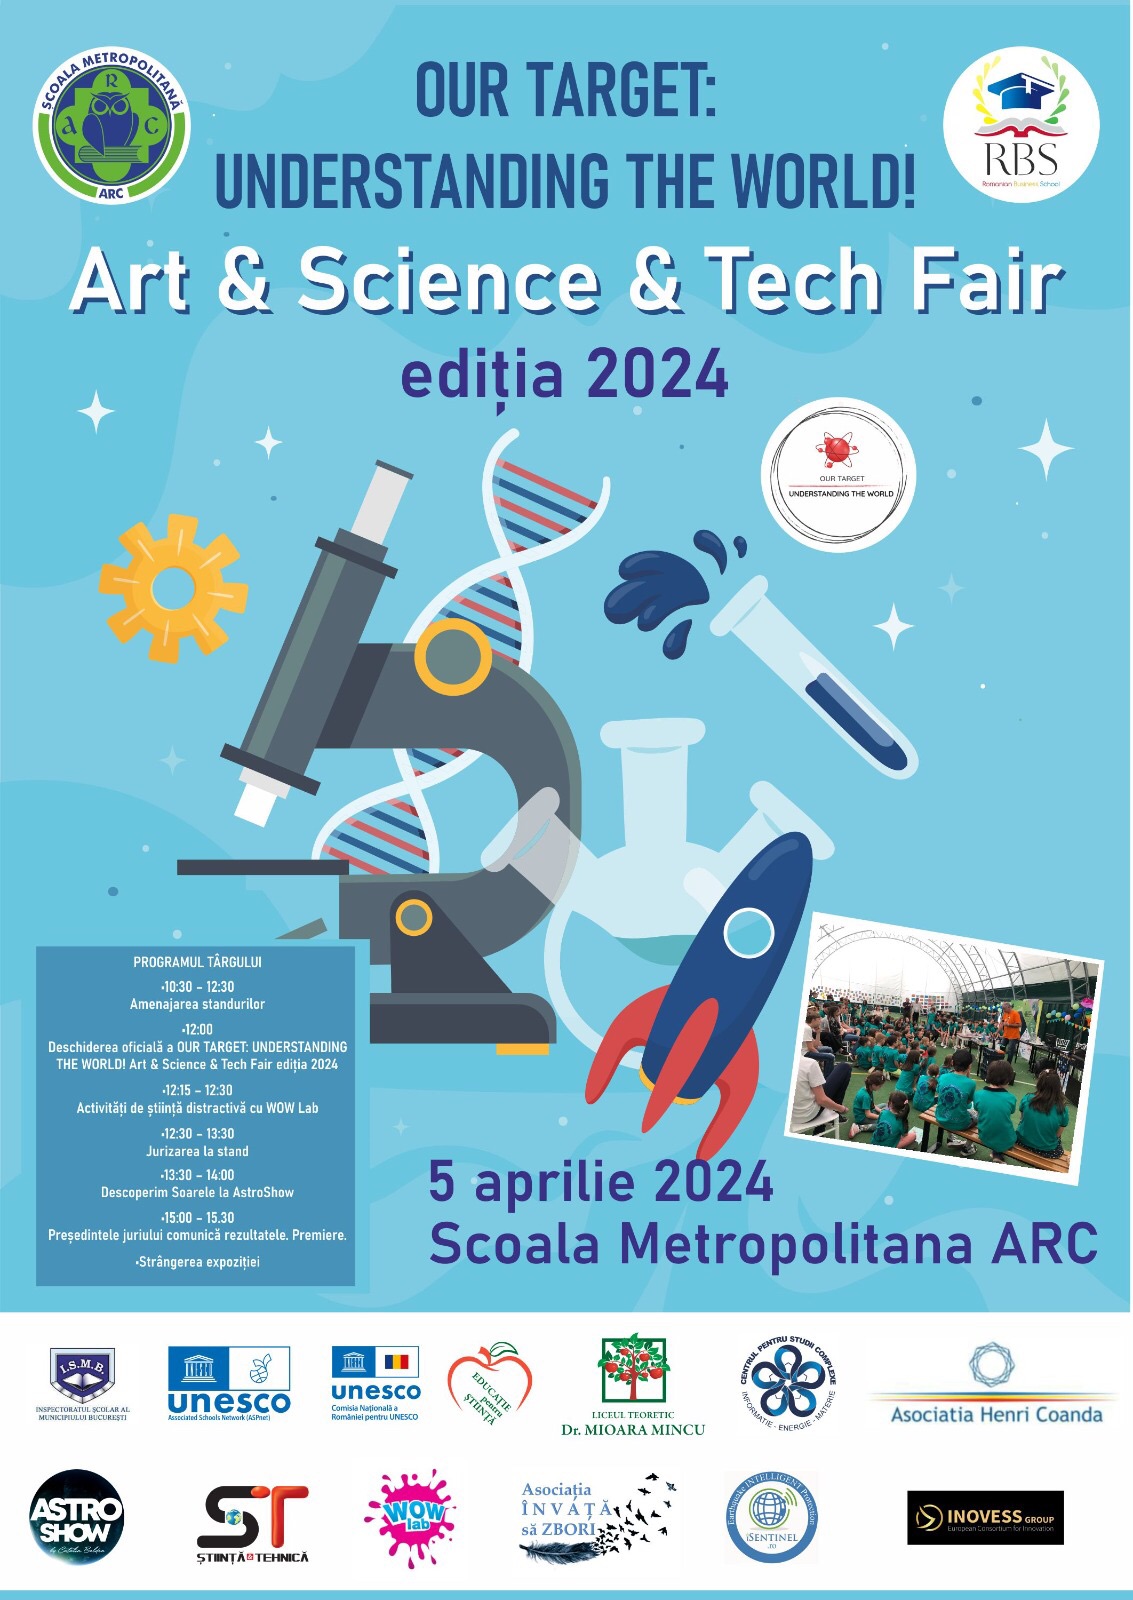 Our target UNDERSTANDING THE WORLD! – Art & Science & Tech Fair